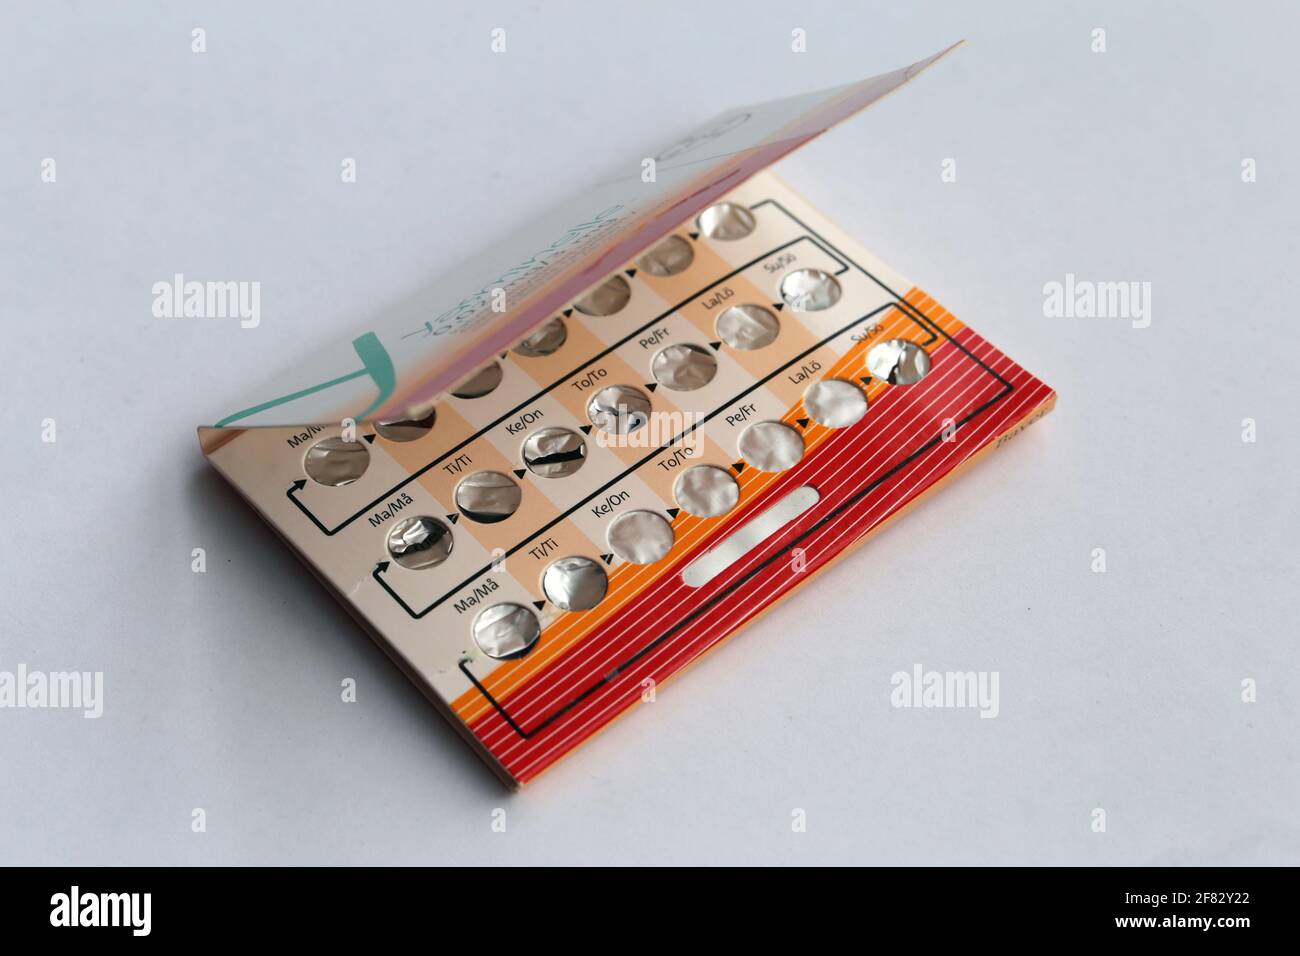 Les pilules contraceptives de Yasminelle comprenant à la fois des œstrogènes et des progesterones. Ces pilules peuvent empêcher la grossesse non désirée lorsqu'elles sont prises par ordonnance. Banque D'Images